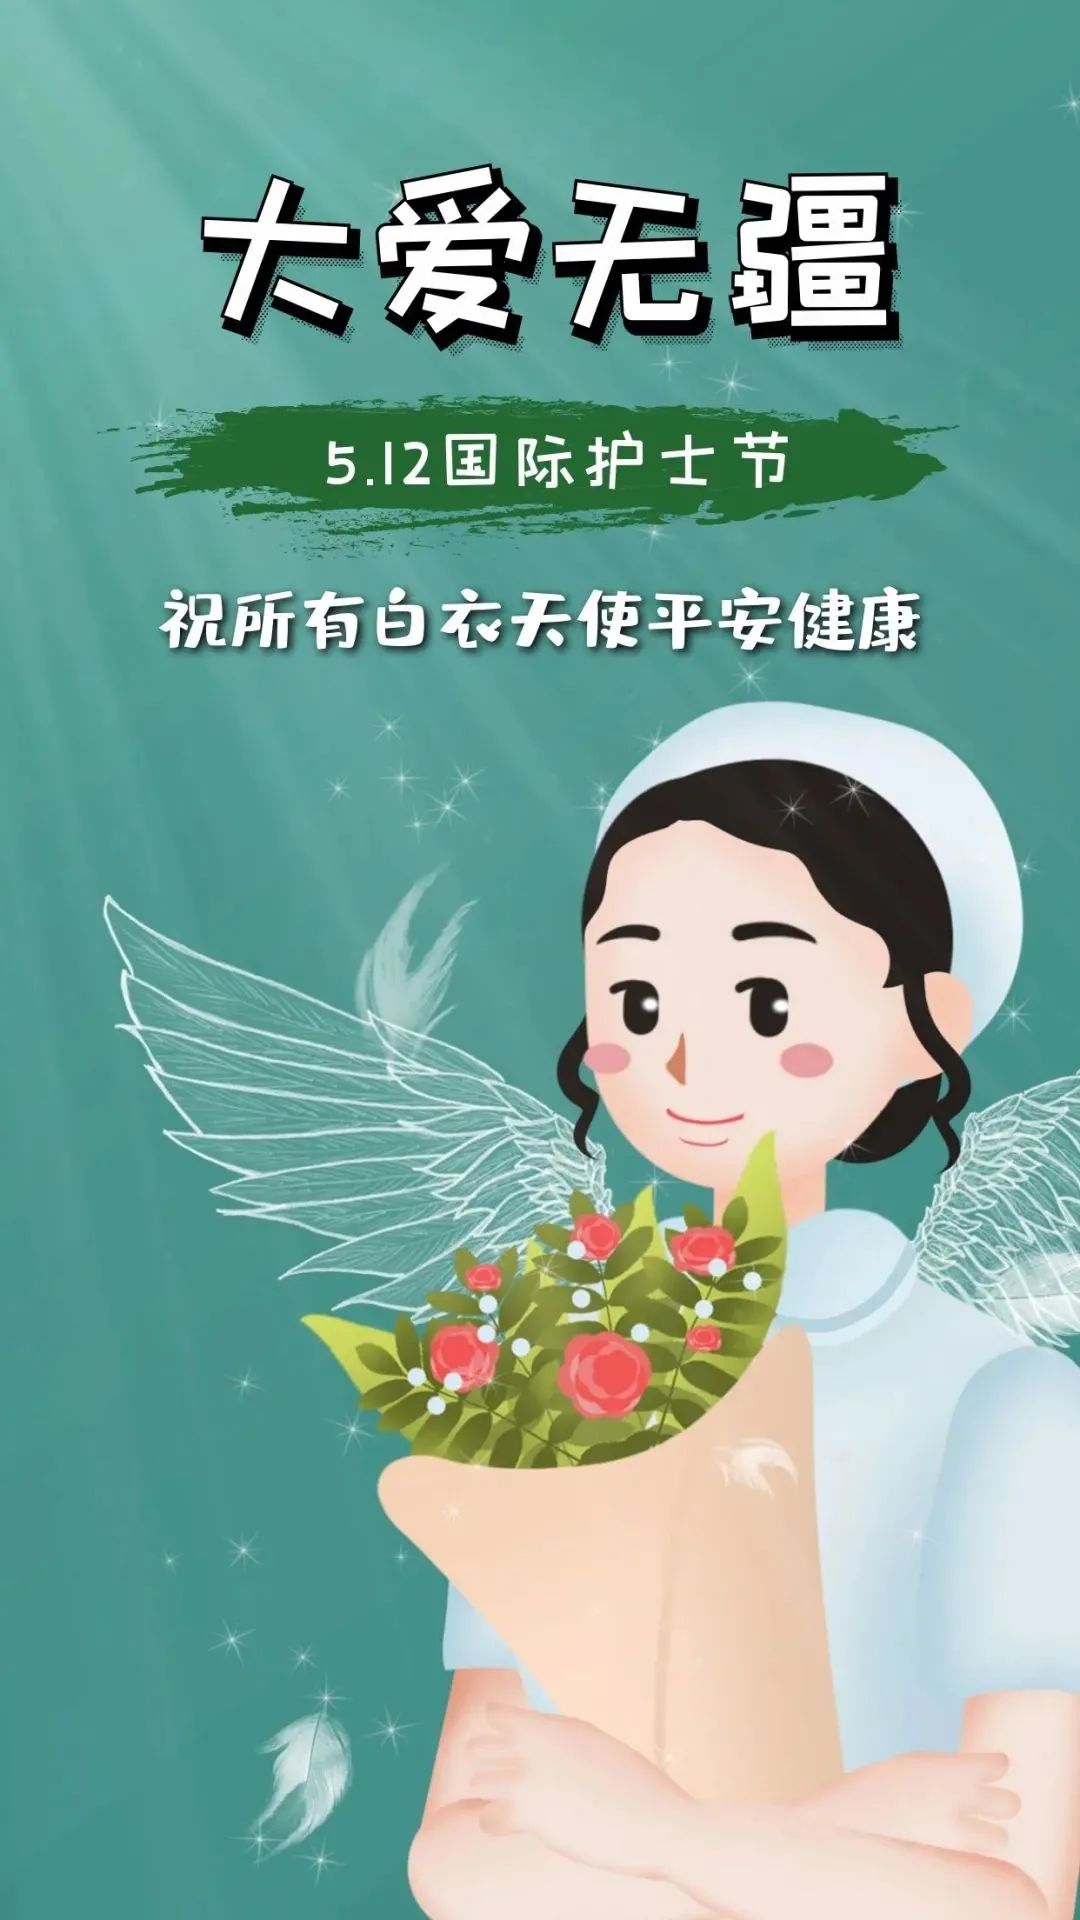 【512国际护士节】寄语守护生命的天使